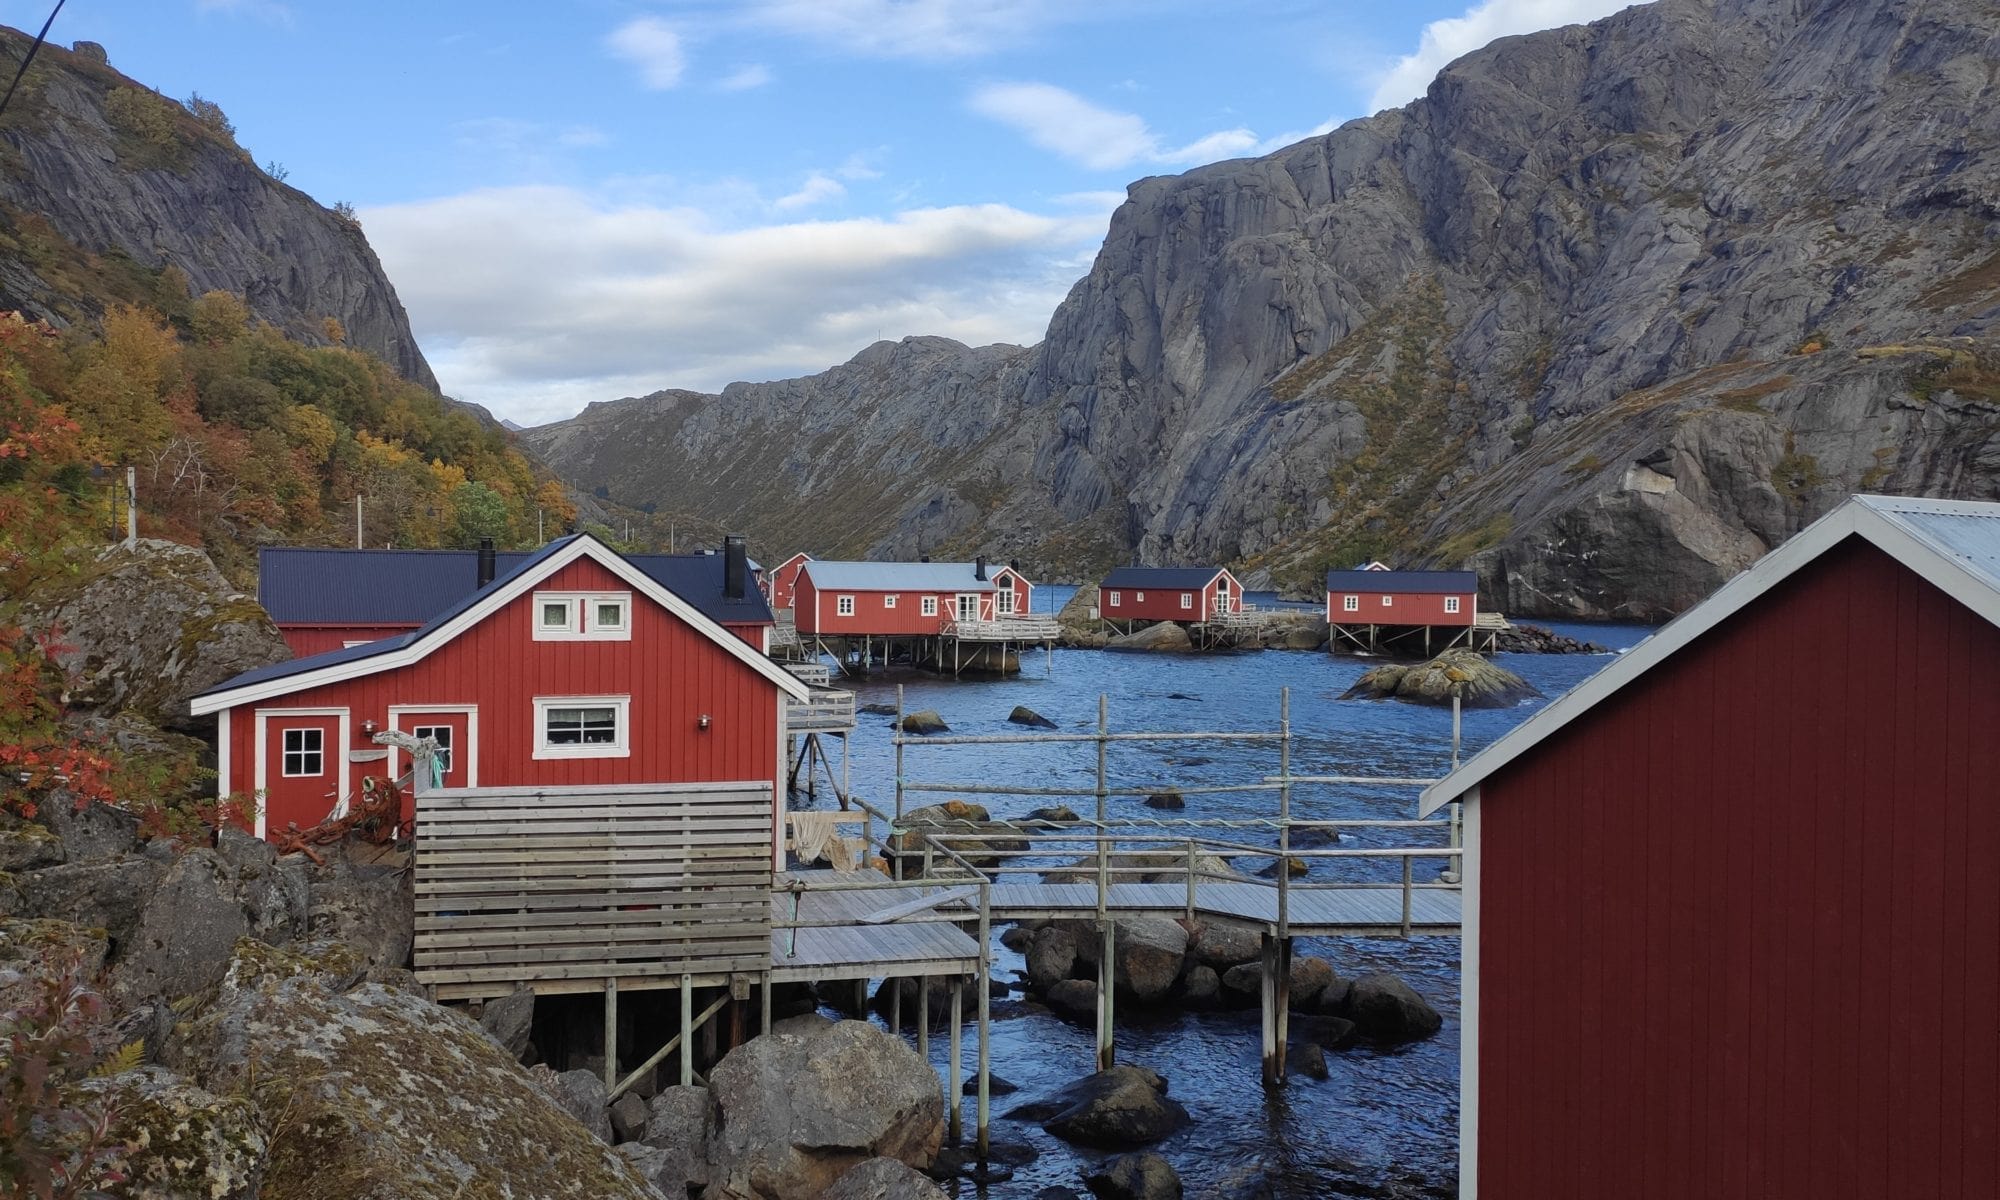 Urlaub in Norwegen: Wo ist es am schönsten? (mit Karte)